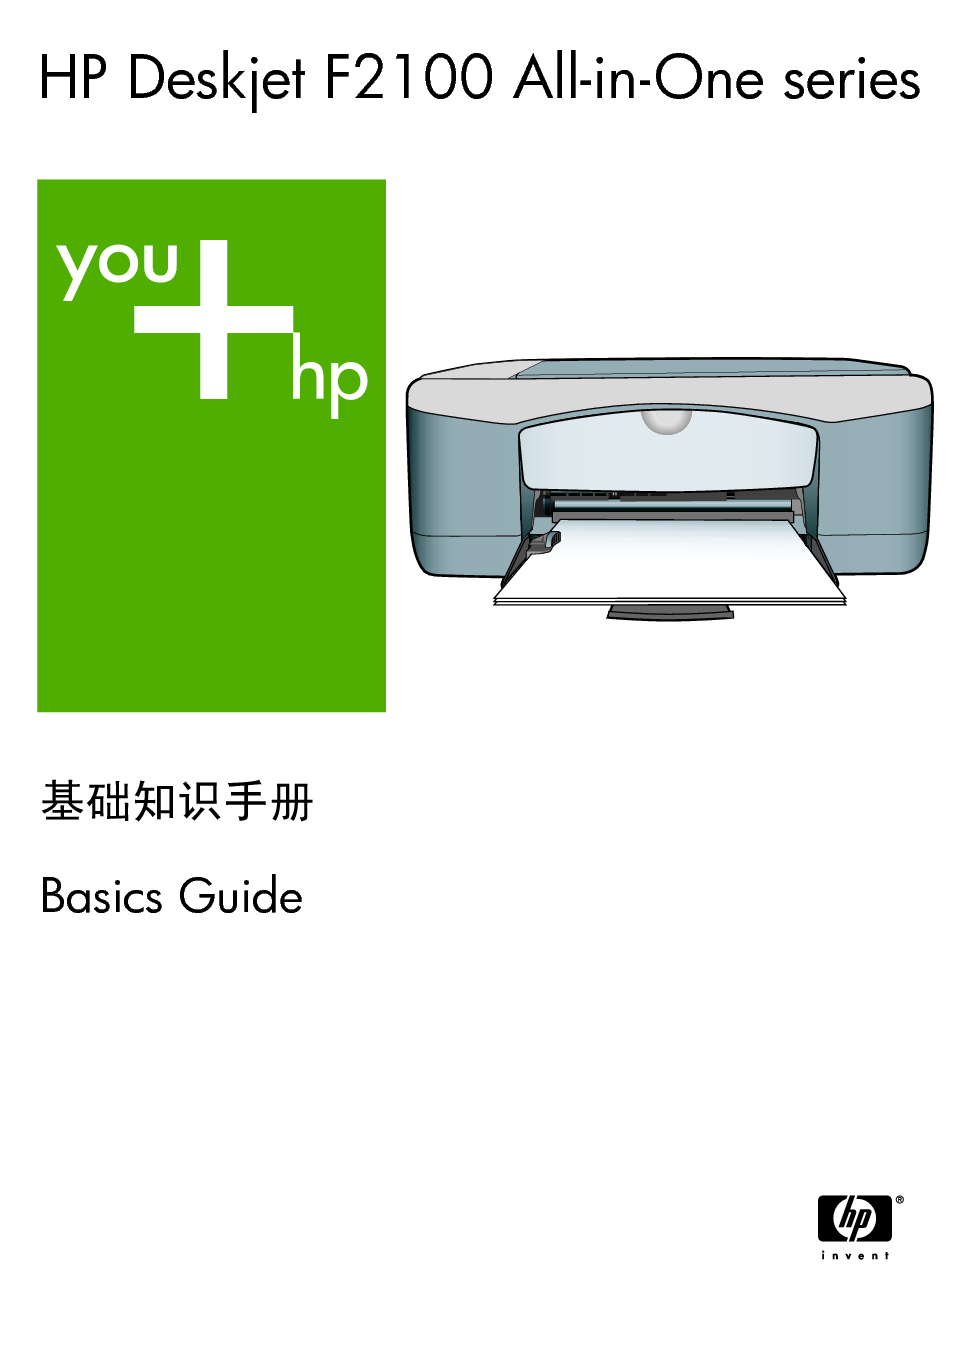 惠普 HP DeskJet F2100 基础使用指南 封面